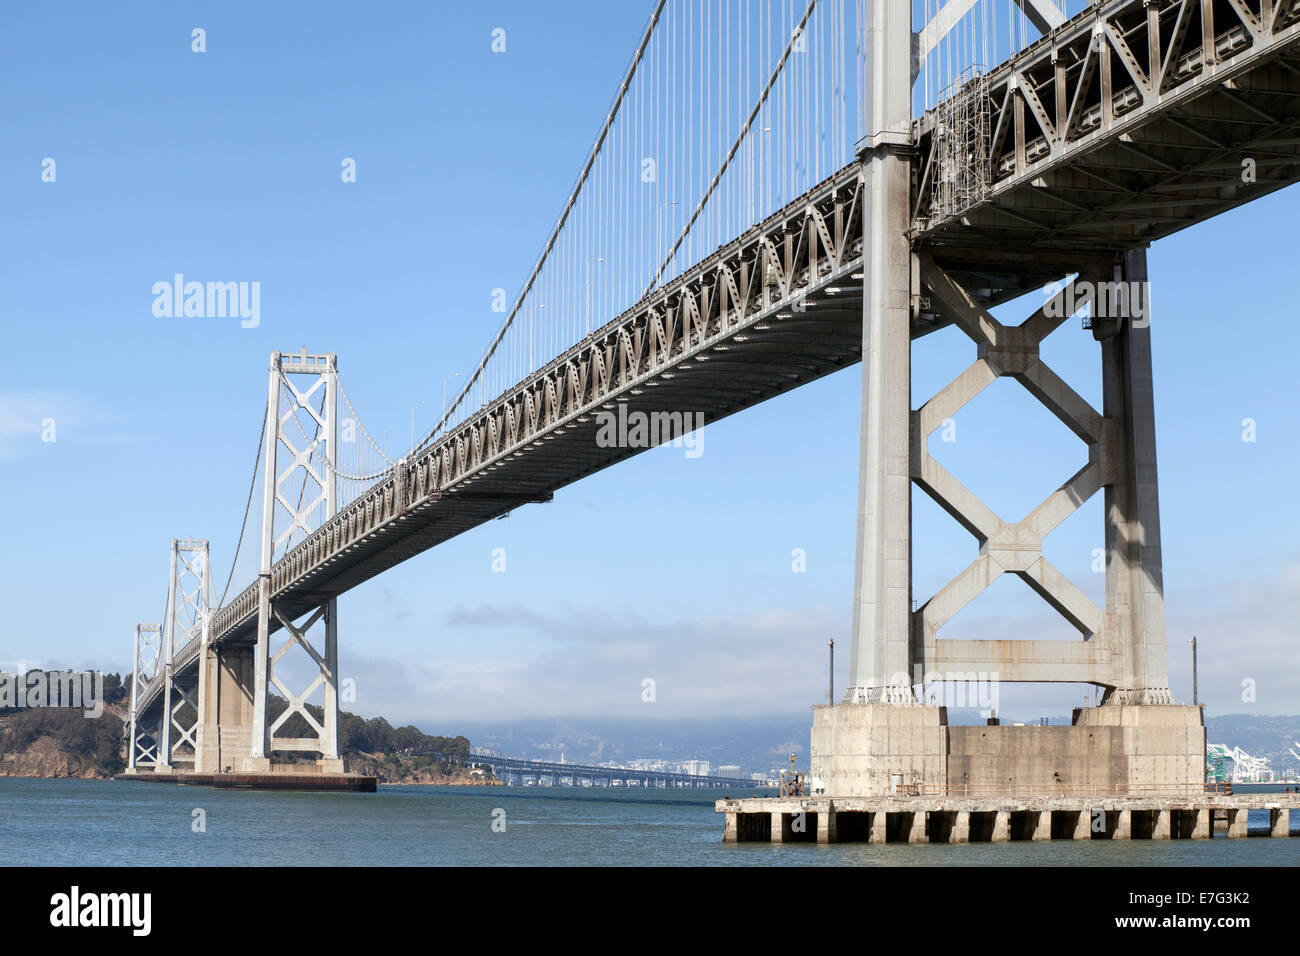 Bay bridge viewed from the Embarcadero, San Francisco, California, USA Stock Photo